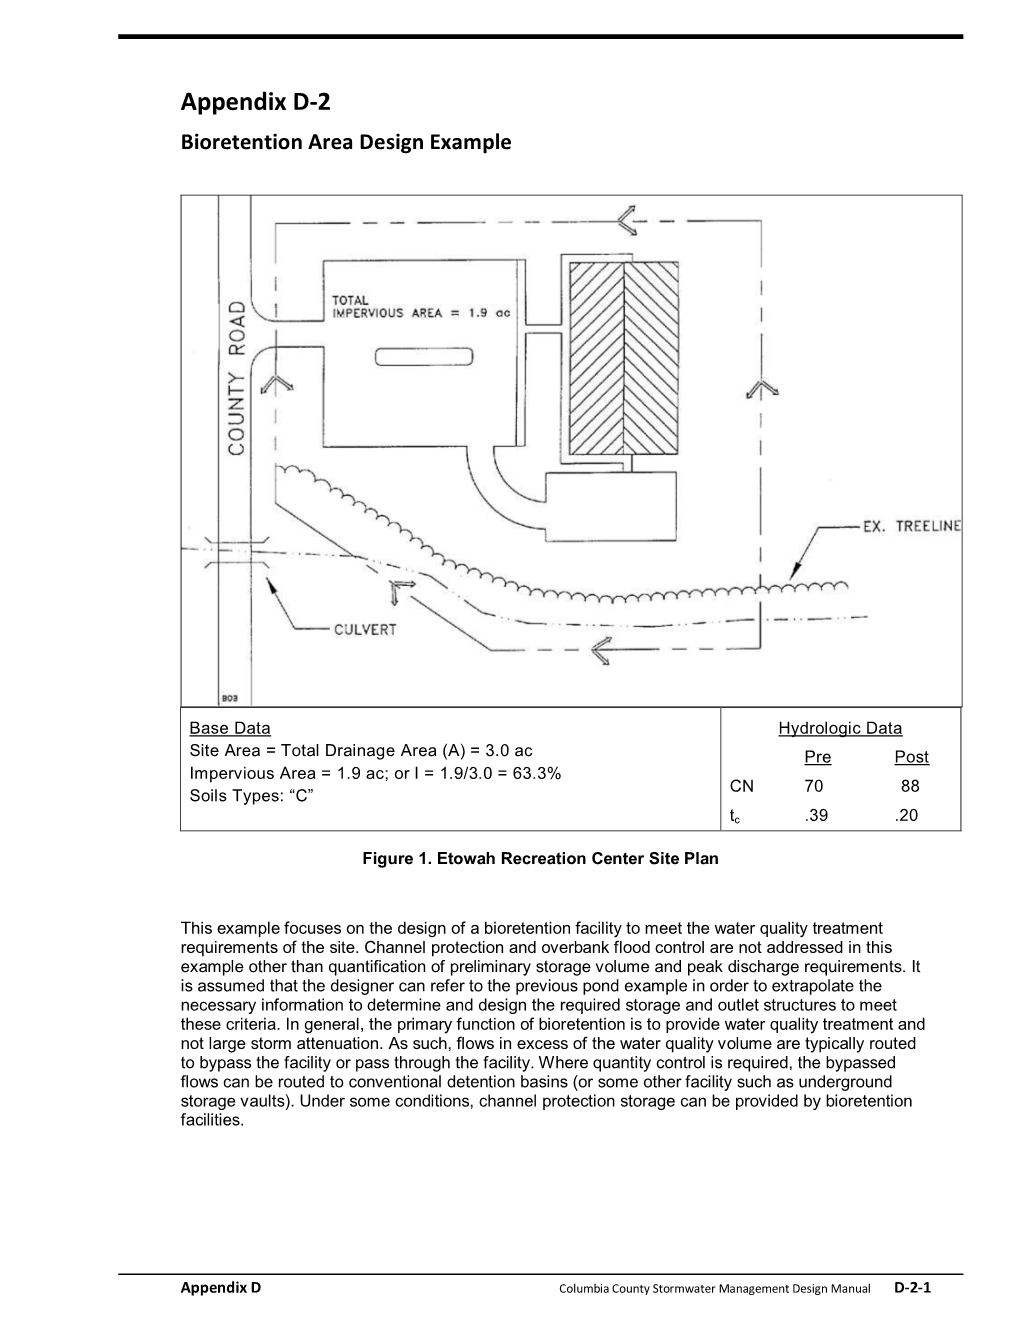 Appendix D-2 Bioretention Area Design Example